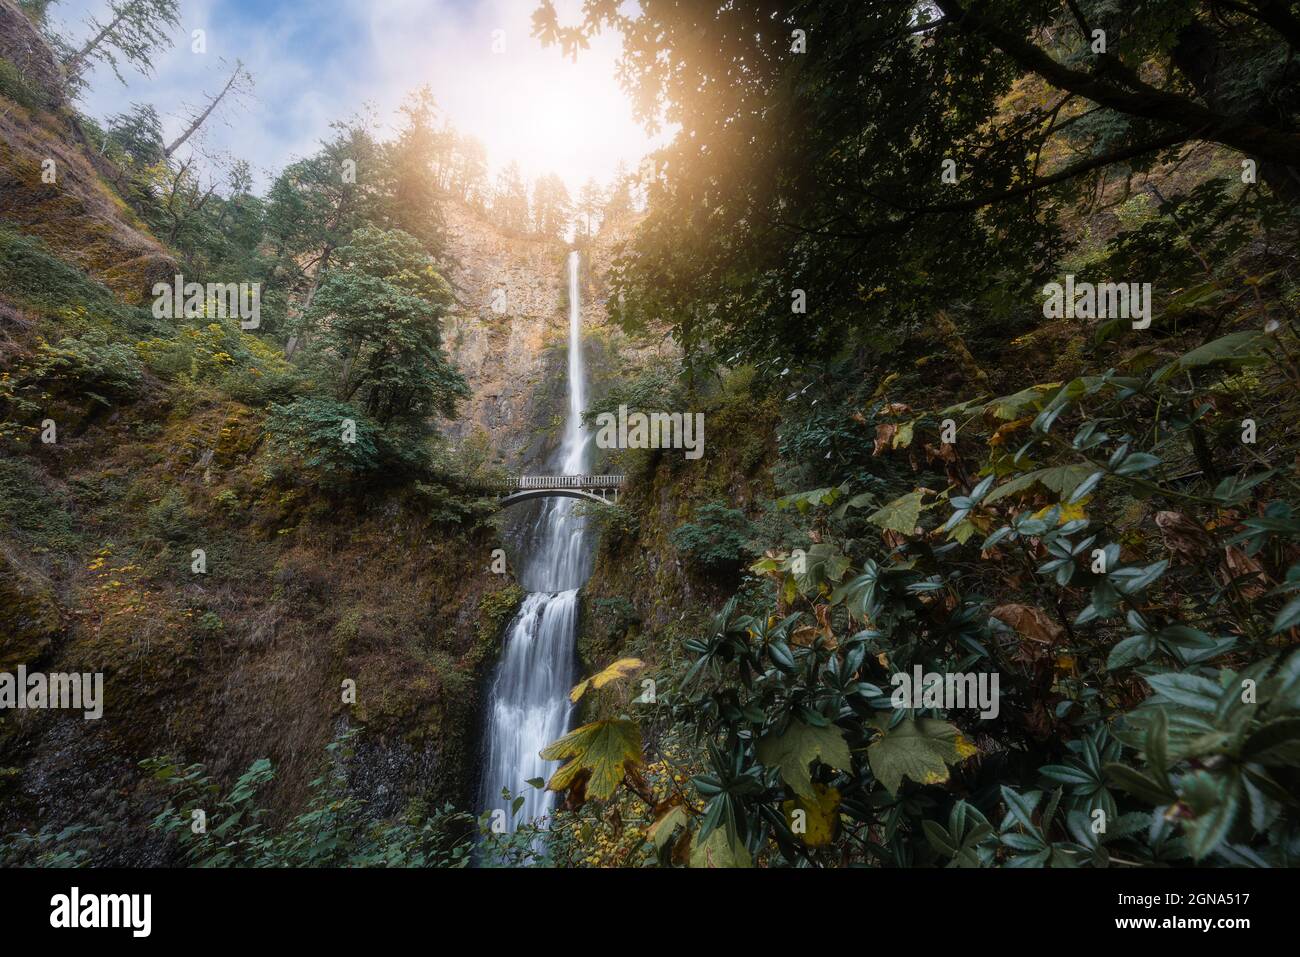 Zauberhaftes und wunderschönes Touristenziel für den Wasserfall Multnomah Falls im üppigen Wald der Columbia River Gorge in Oregon Stockfoto